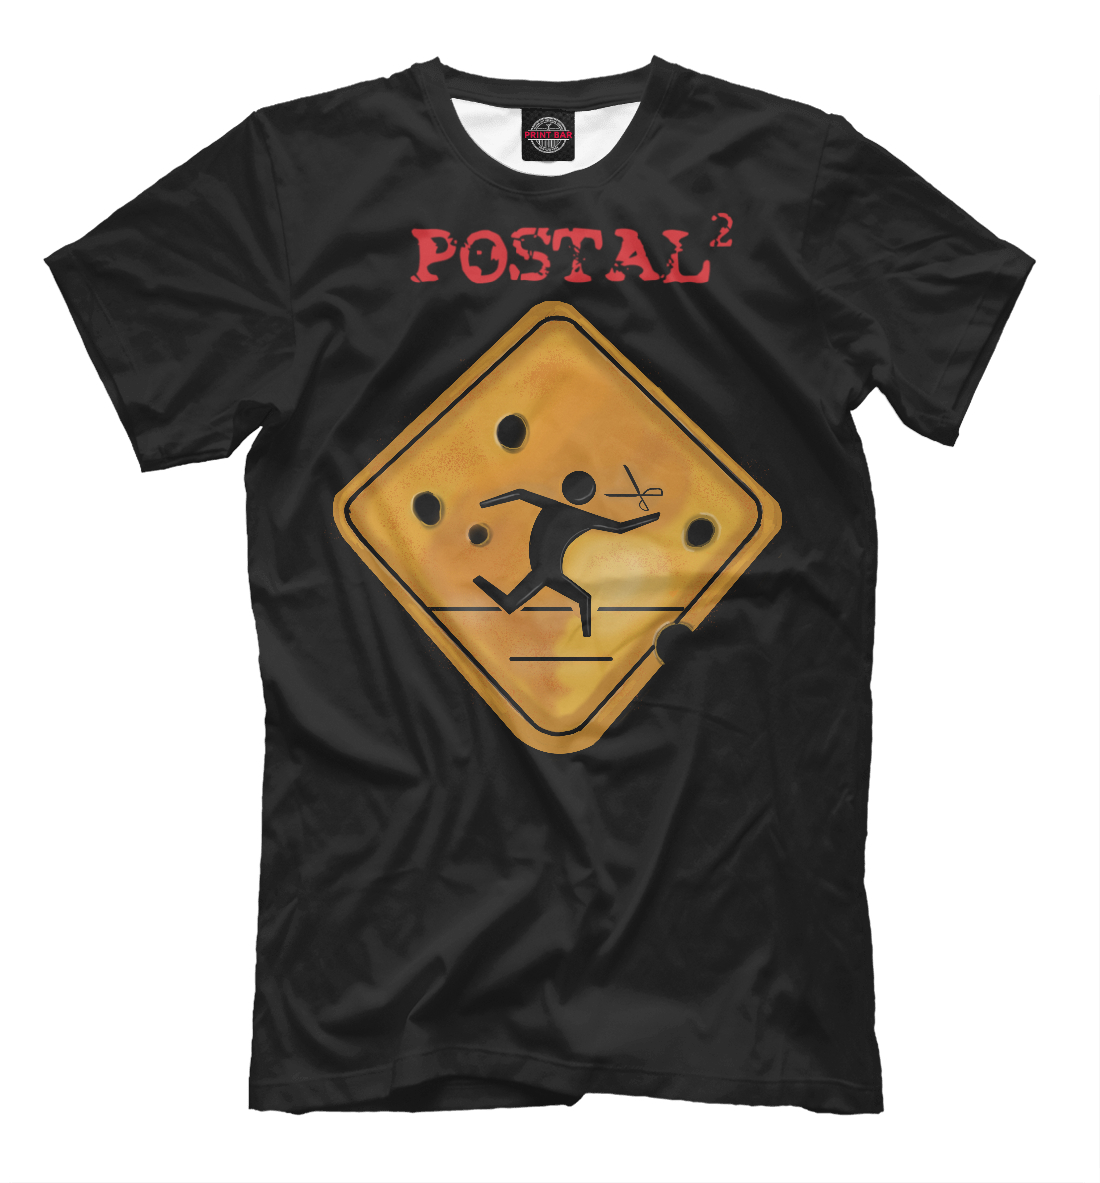 Футболка Postal для мальчиков, артикул: RPG-326928-fut-2mp